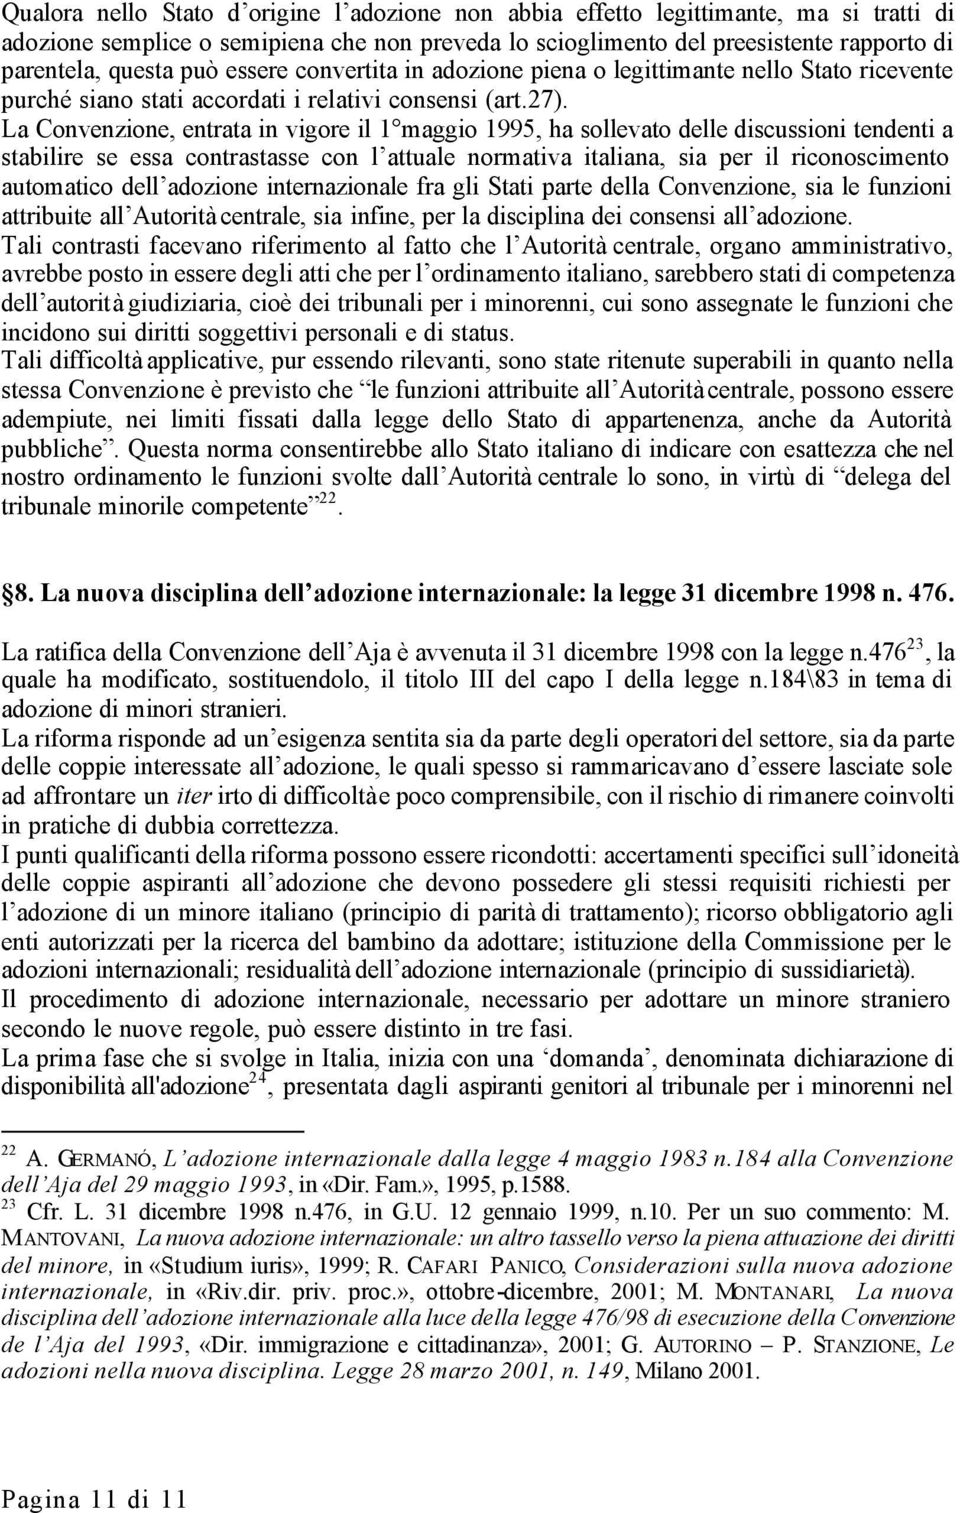 La Convenzione, entrata in vigore il 1 maggio 1995, ha sollevato delle discussioni tendenti a stabilire se essa contrastasse con l attuale normativa italiana, sia per il riconoscimento automatico